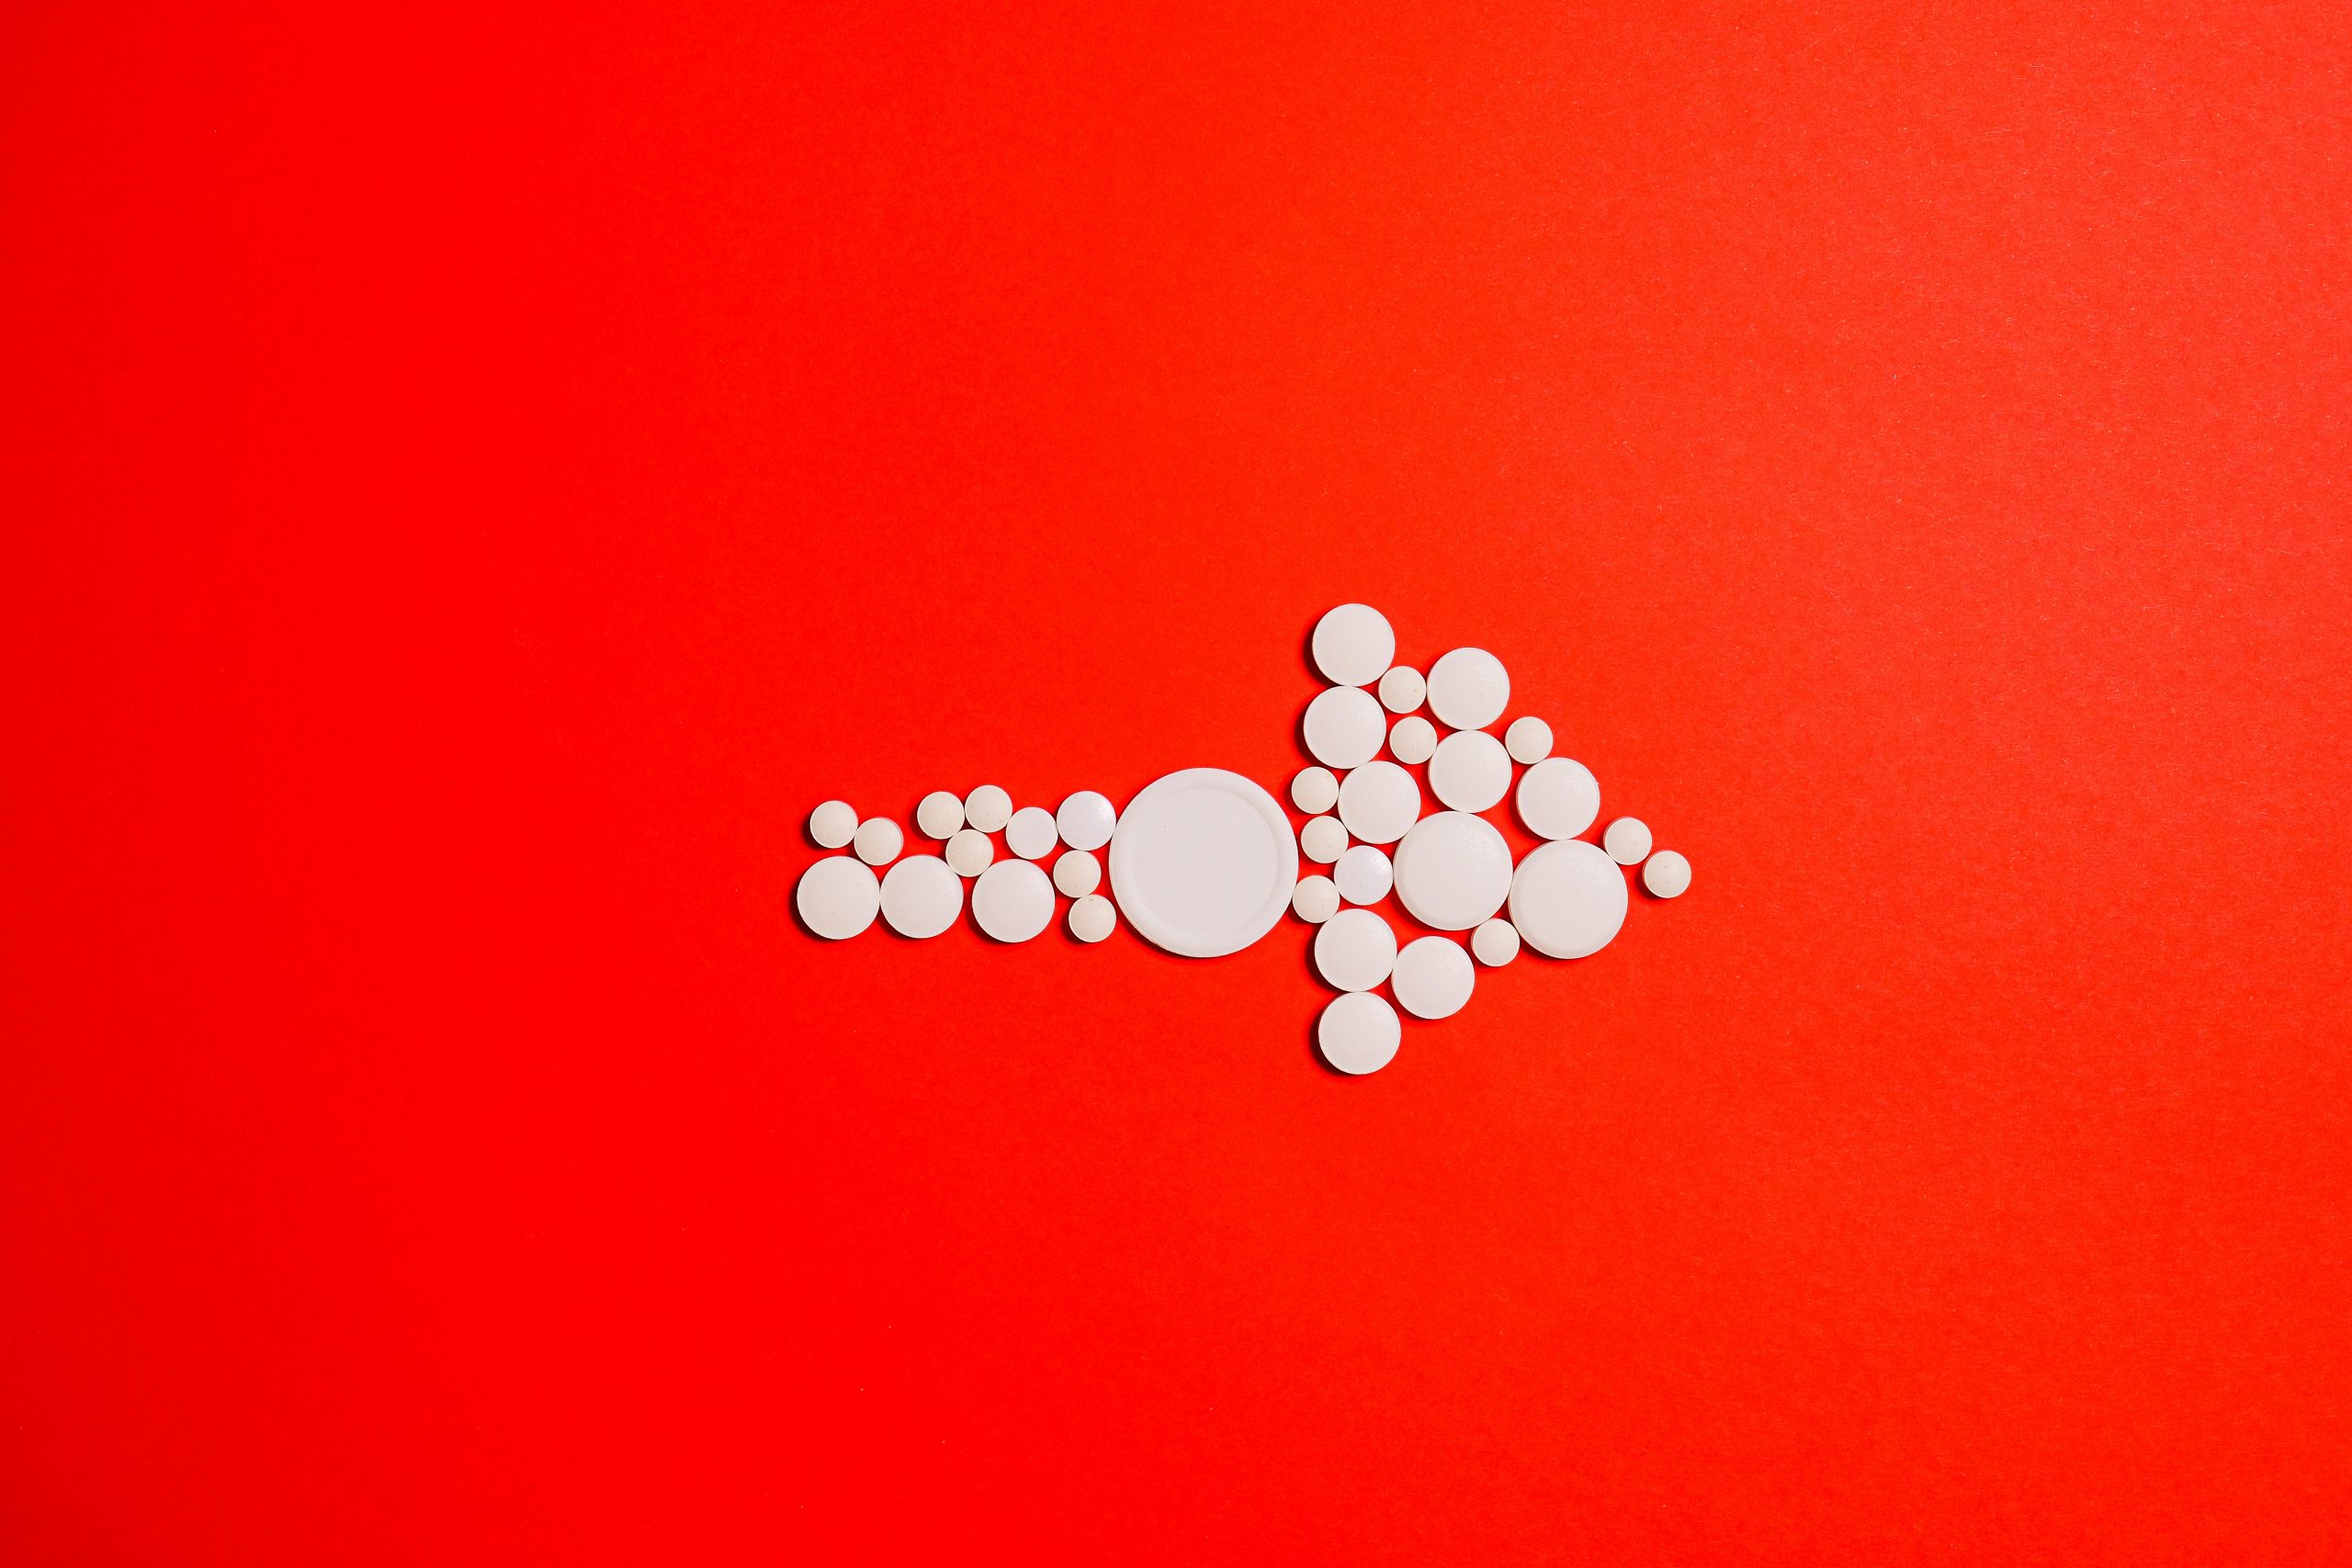 An arrow made up of pills